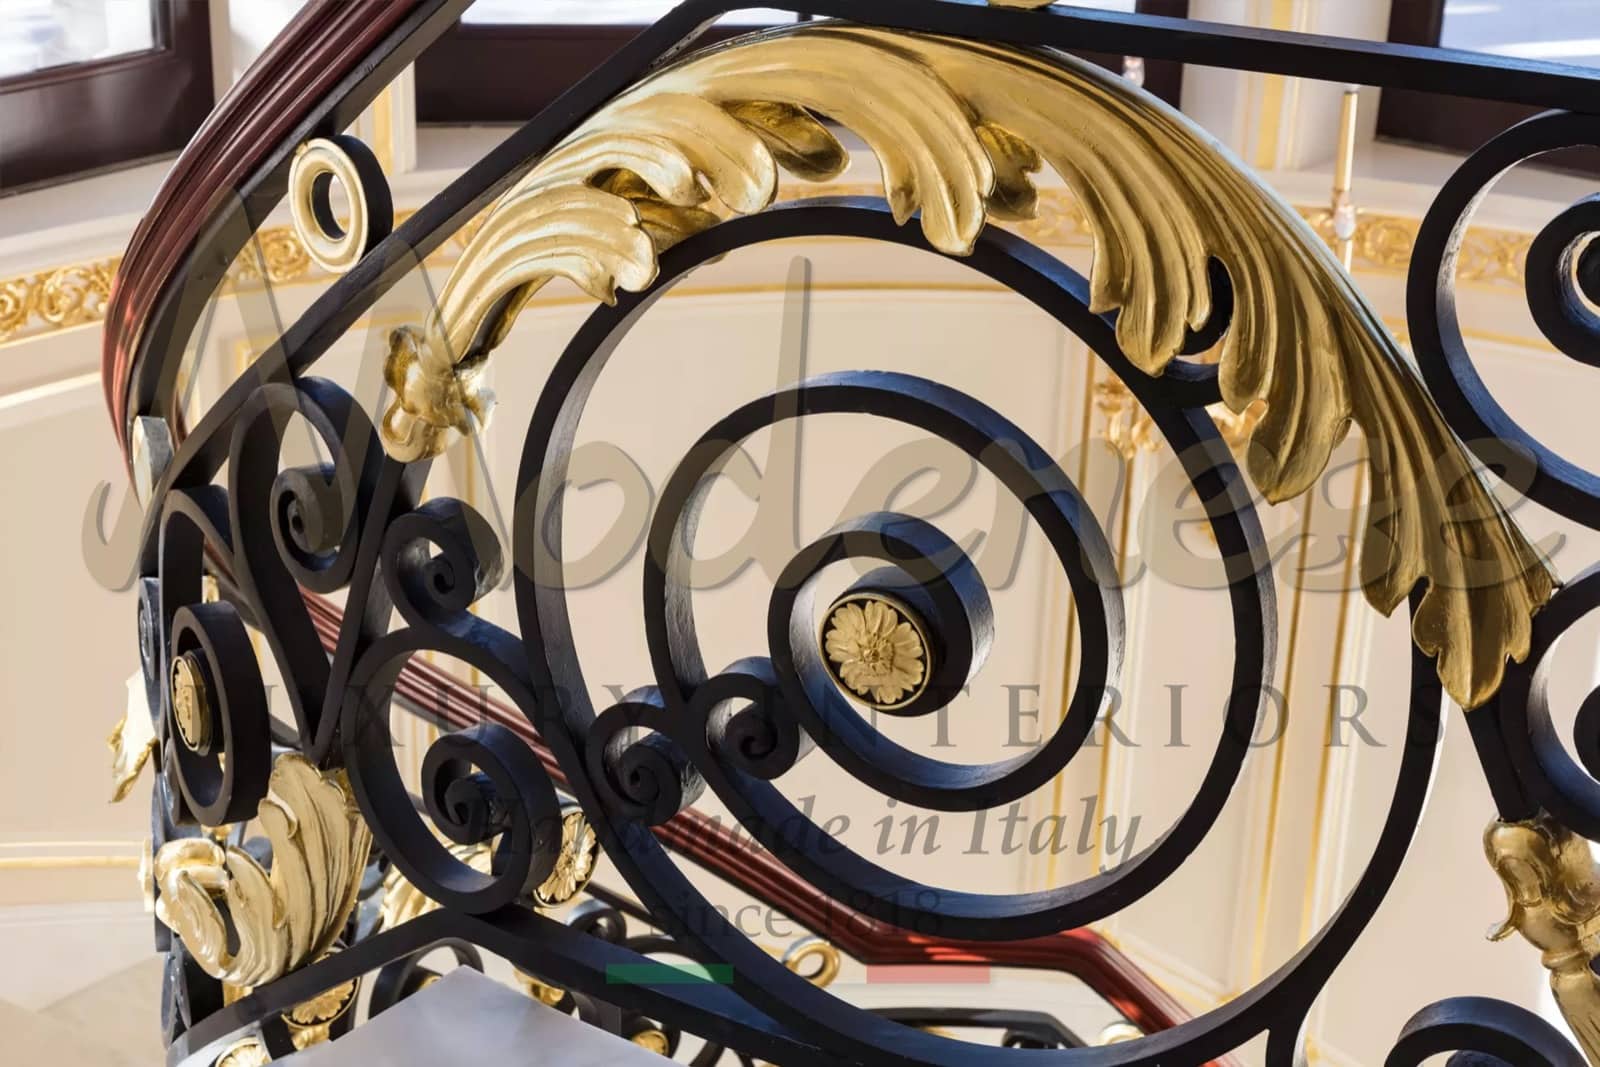 aplikace plátkového zlata pozornost k detailům železné kované zábradlí nejlepší nápady interiérového studia baroko luxusn klasika vyrobená v Itálii interiéry stylové projekty baroko rokoko empír